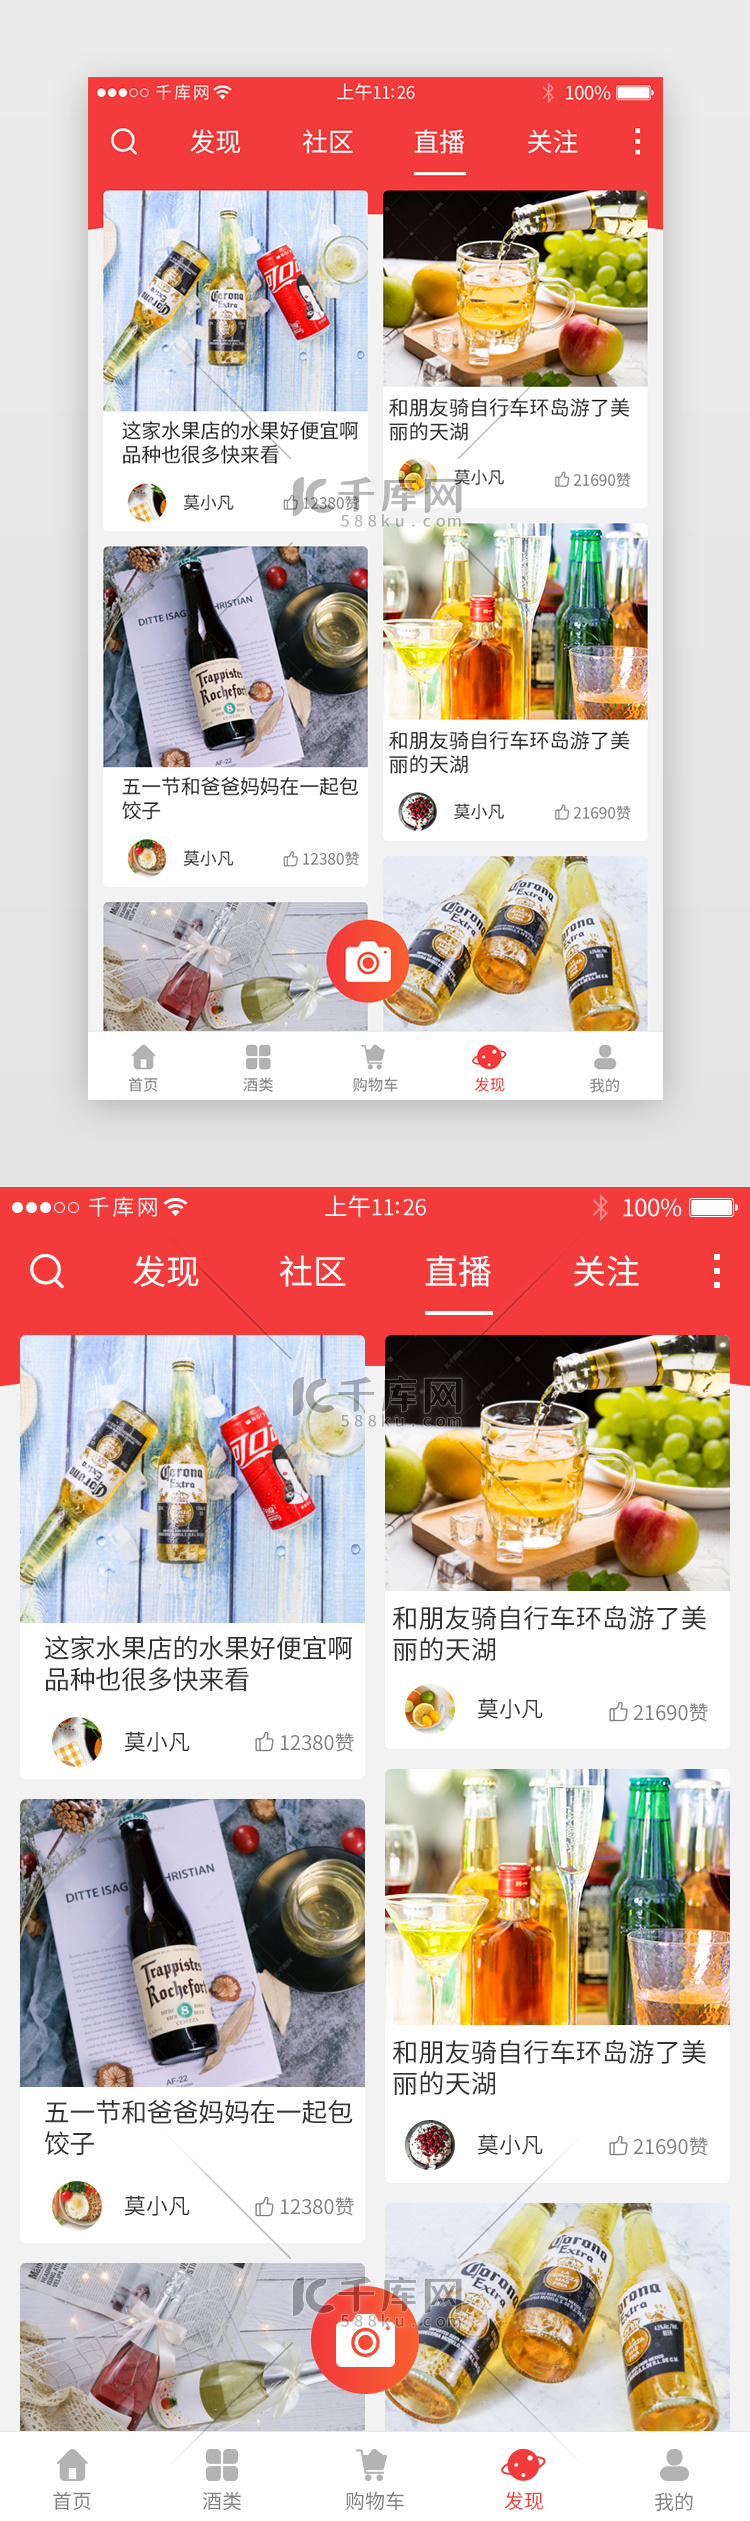 红色系酒类电商app主界面